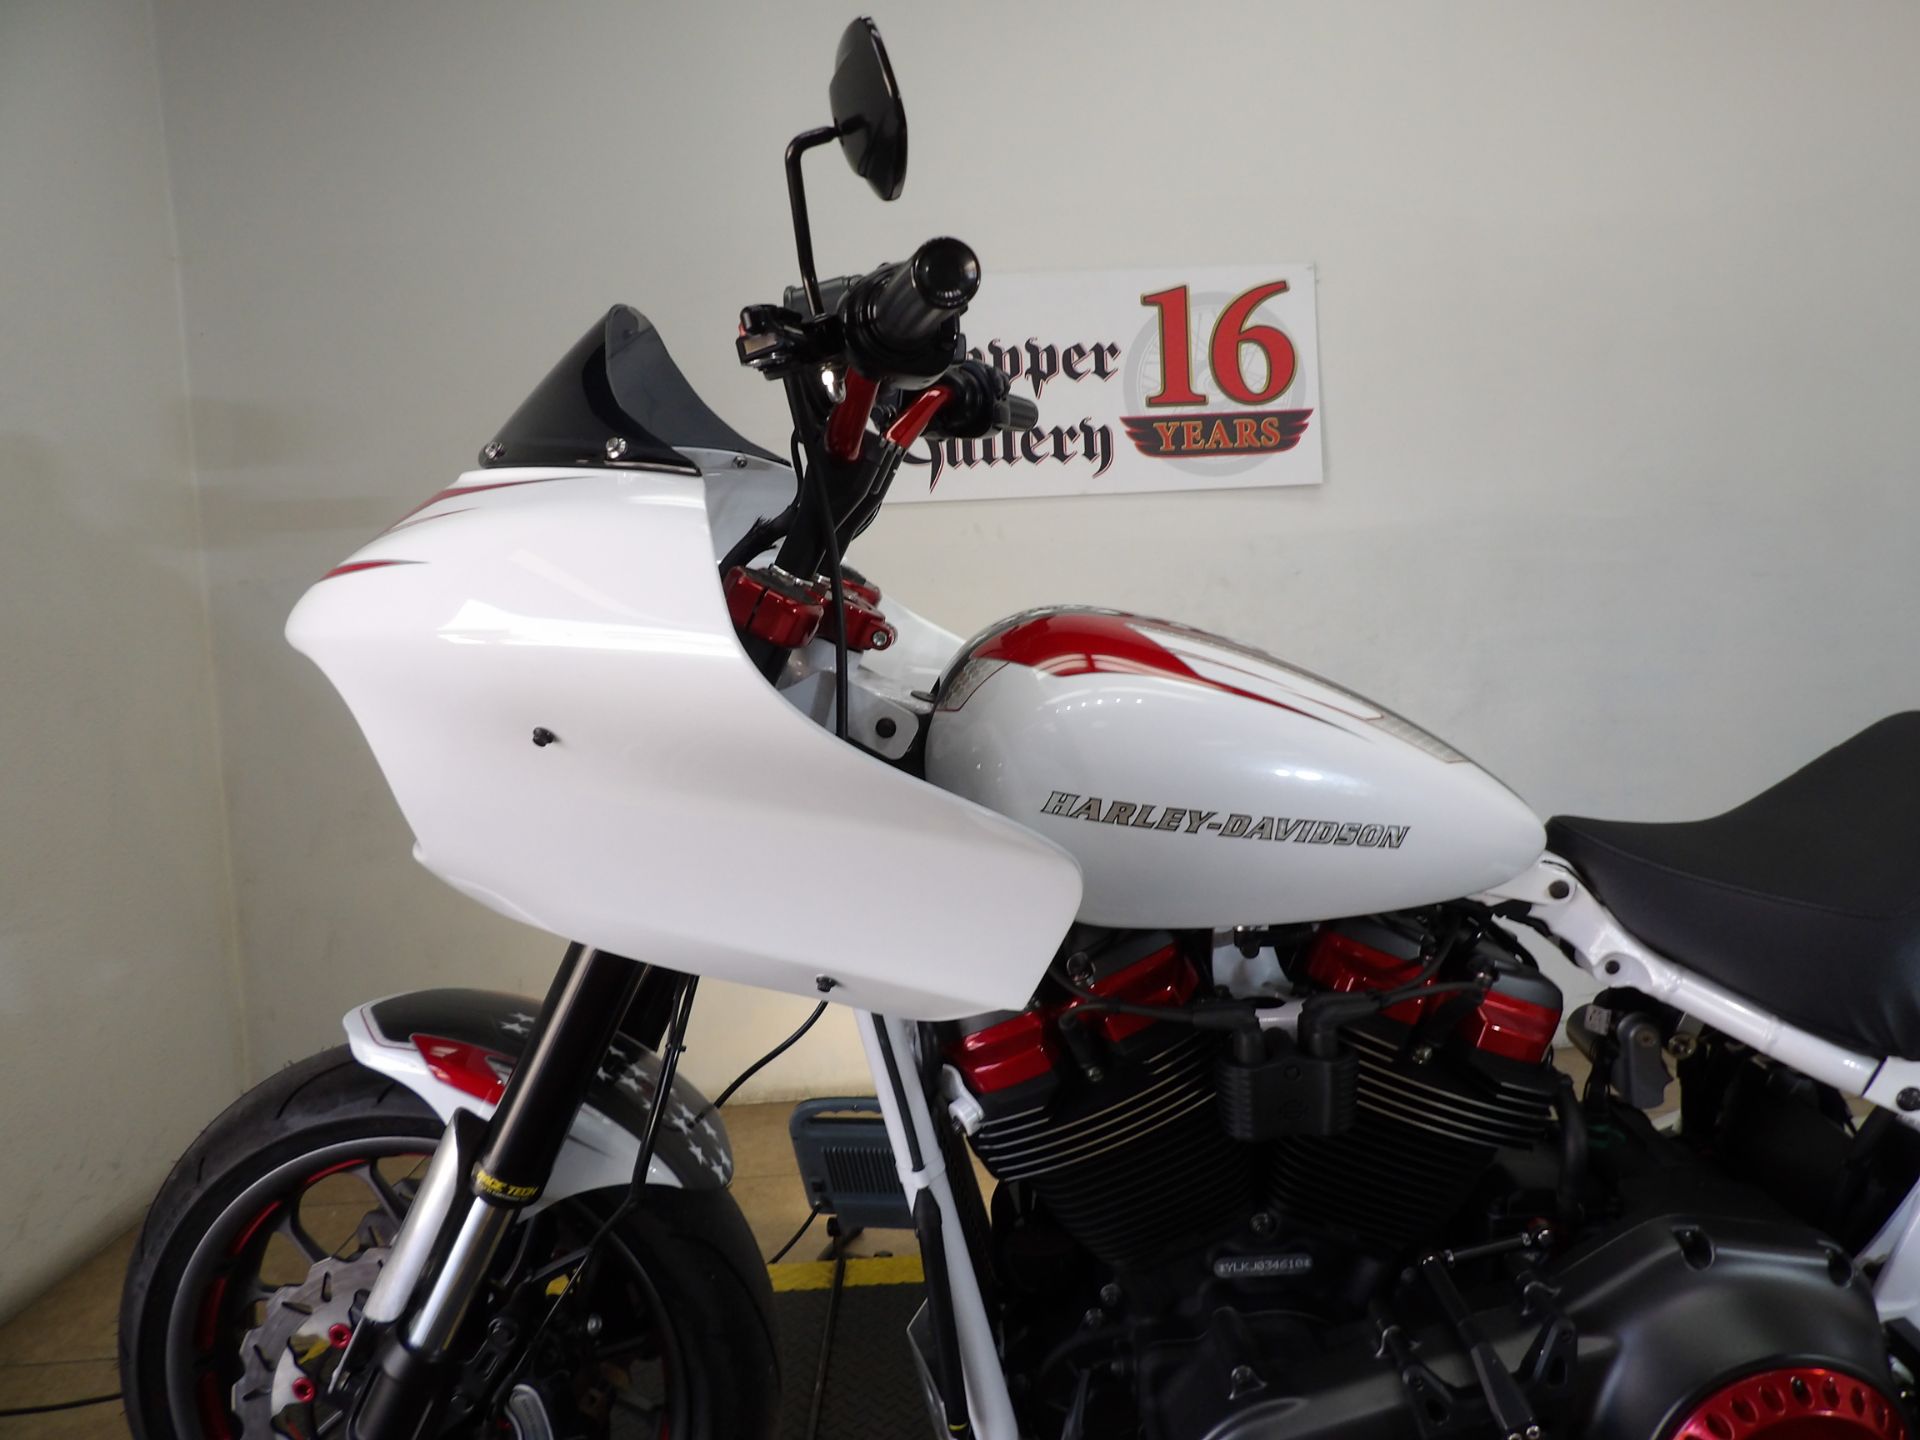 2018 Harley-Davidson Fat Bob® 114 in Temecula, California - Photo 8